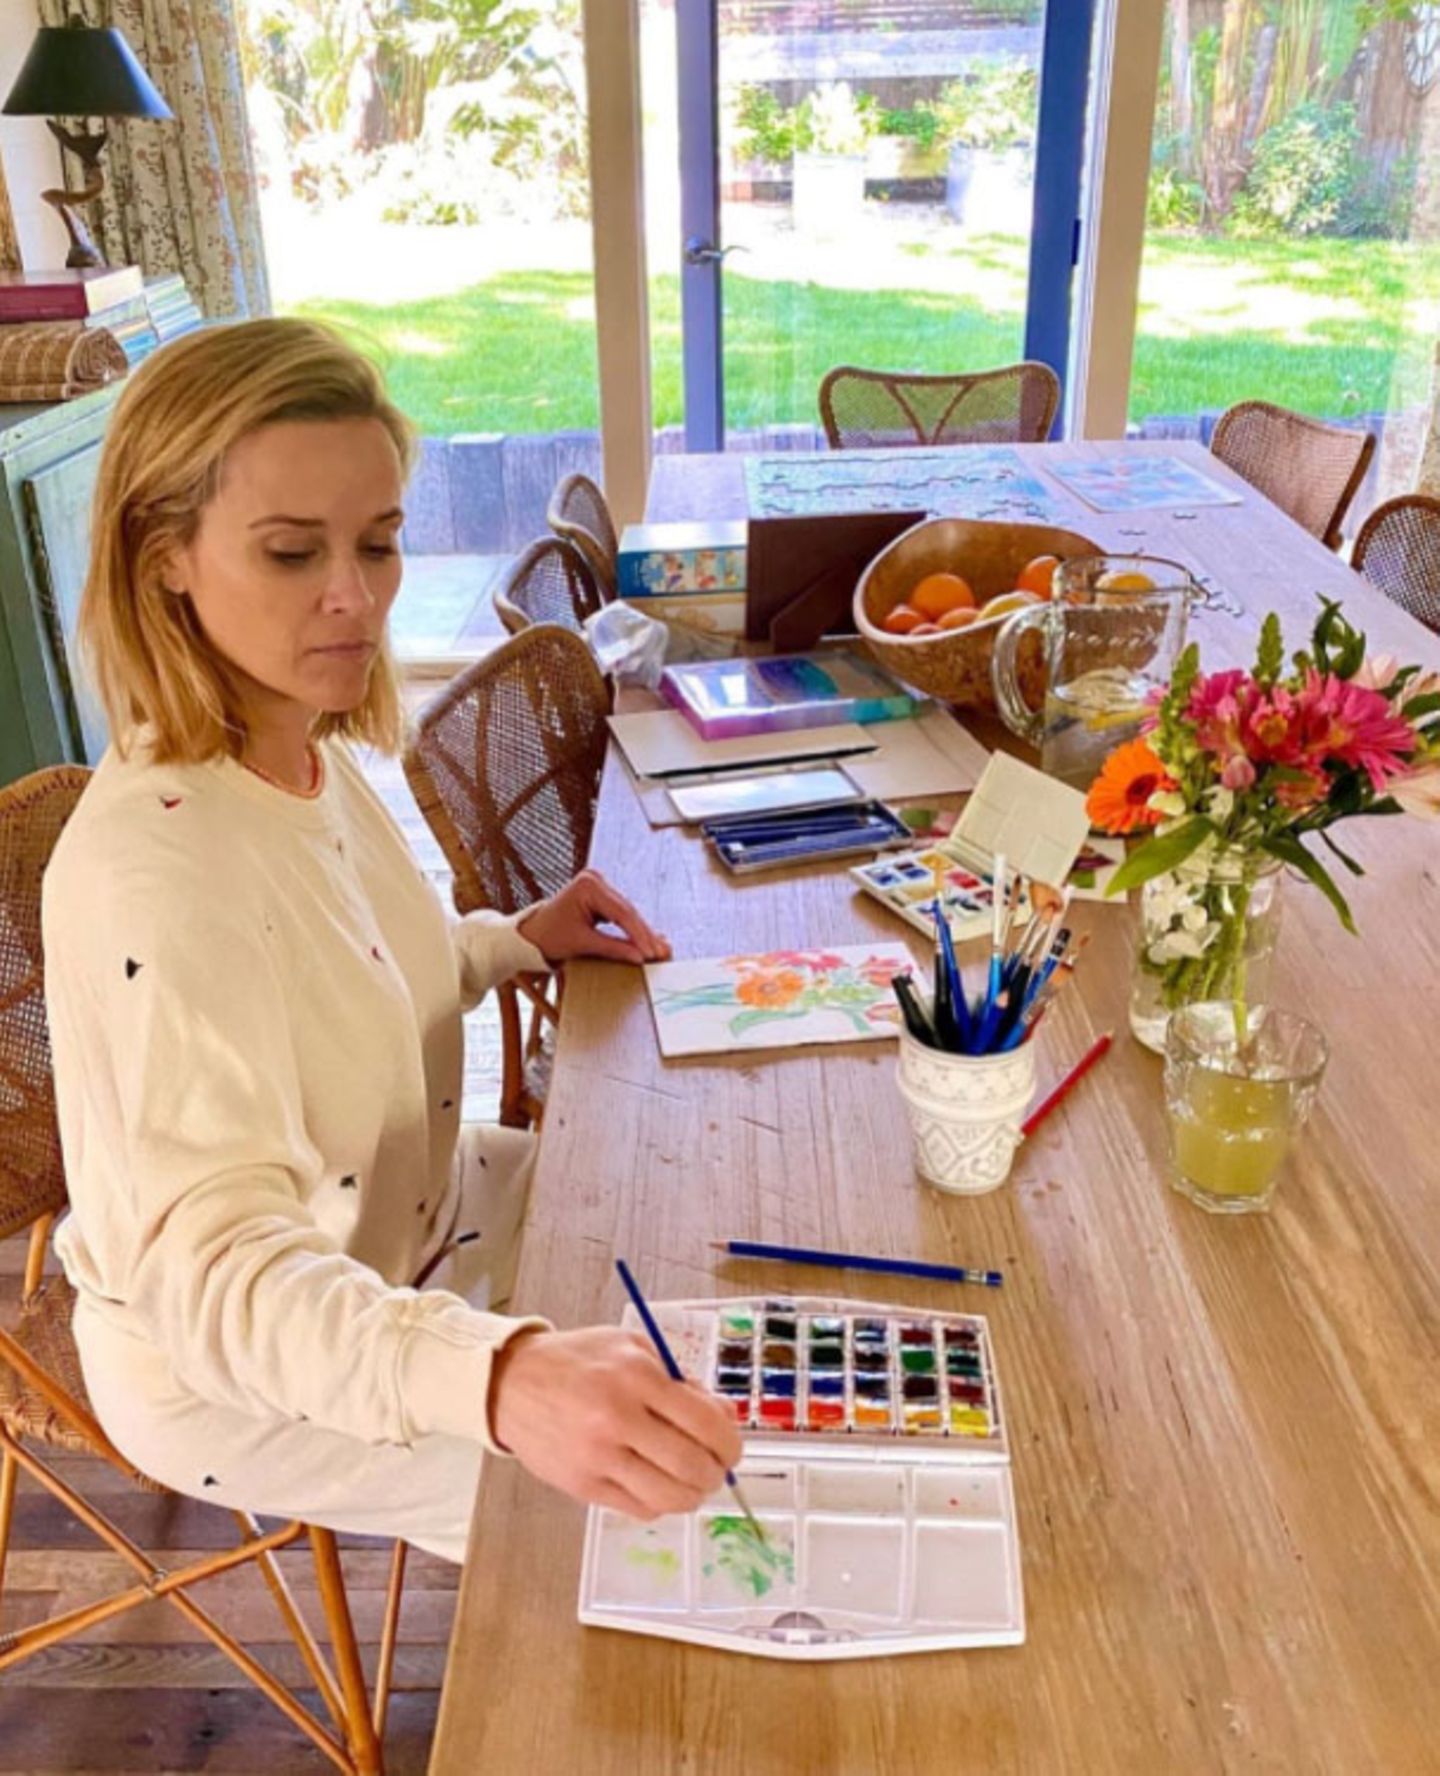 Schauspielerin Reese Witherspoon greift während der Quarantäne zum Pinsel und entdeckt so ein weiteres Talent. Nachdem sie sich die Malutensilien von ihrer Mutter geborgt hat, entsteht auf ihrem Küchentisch ein hübsches, blumiges Kunstwerk in Wasserfarbe.